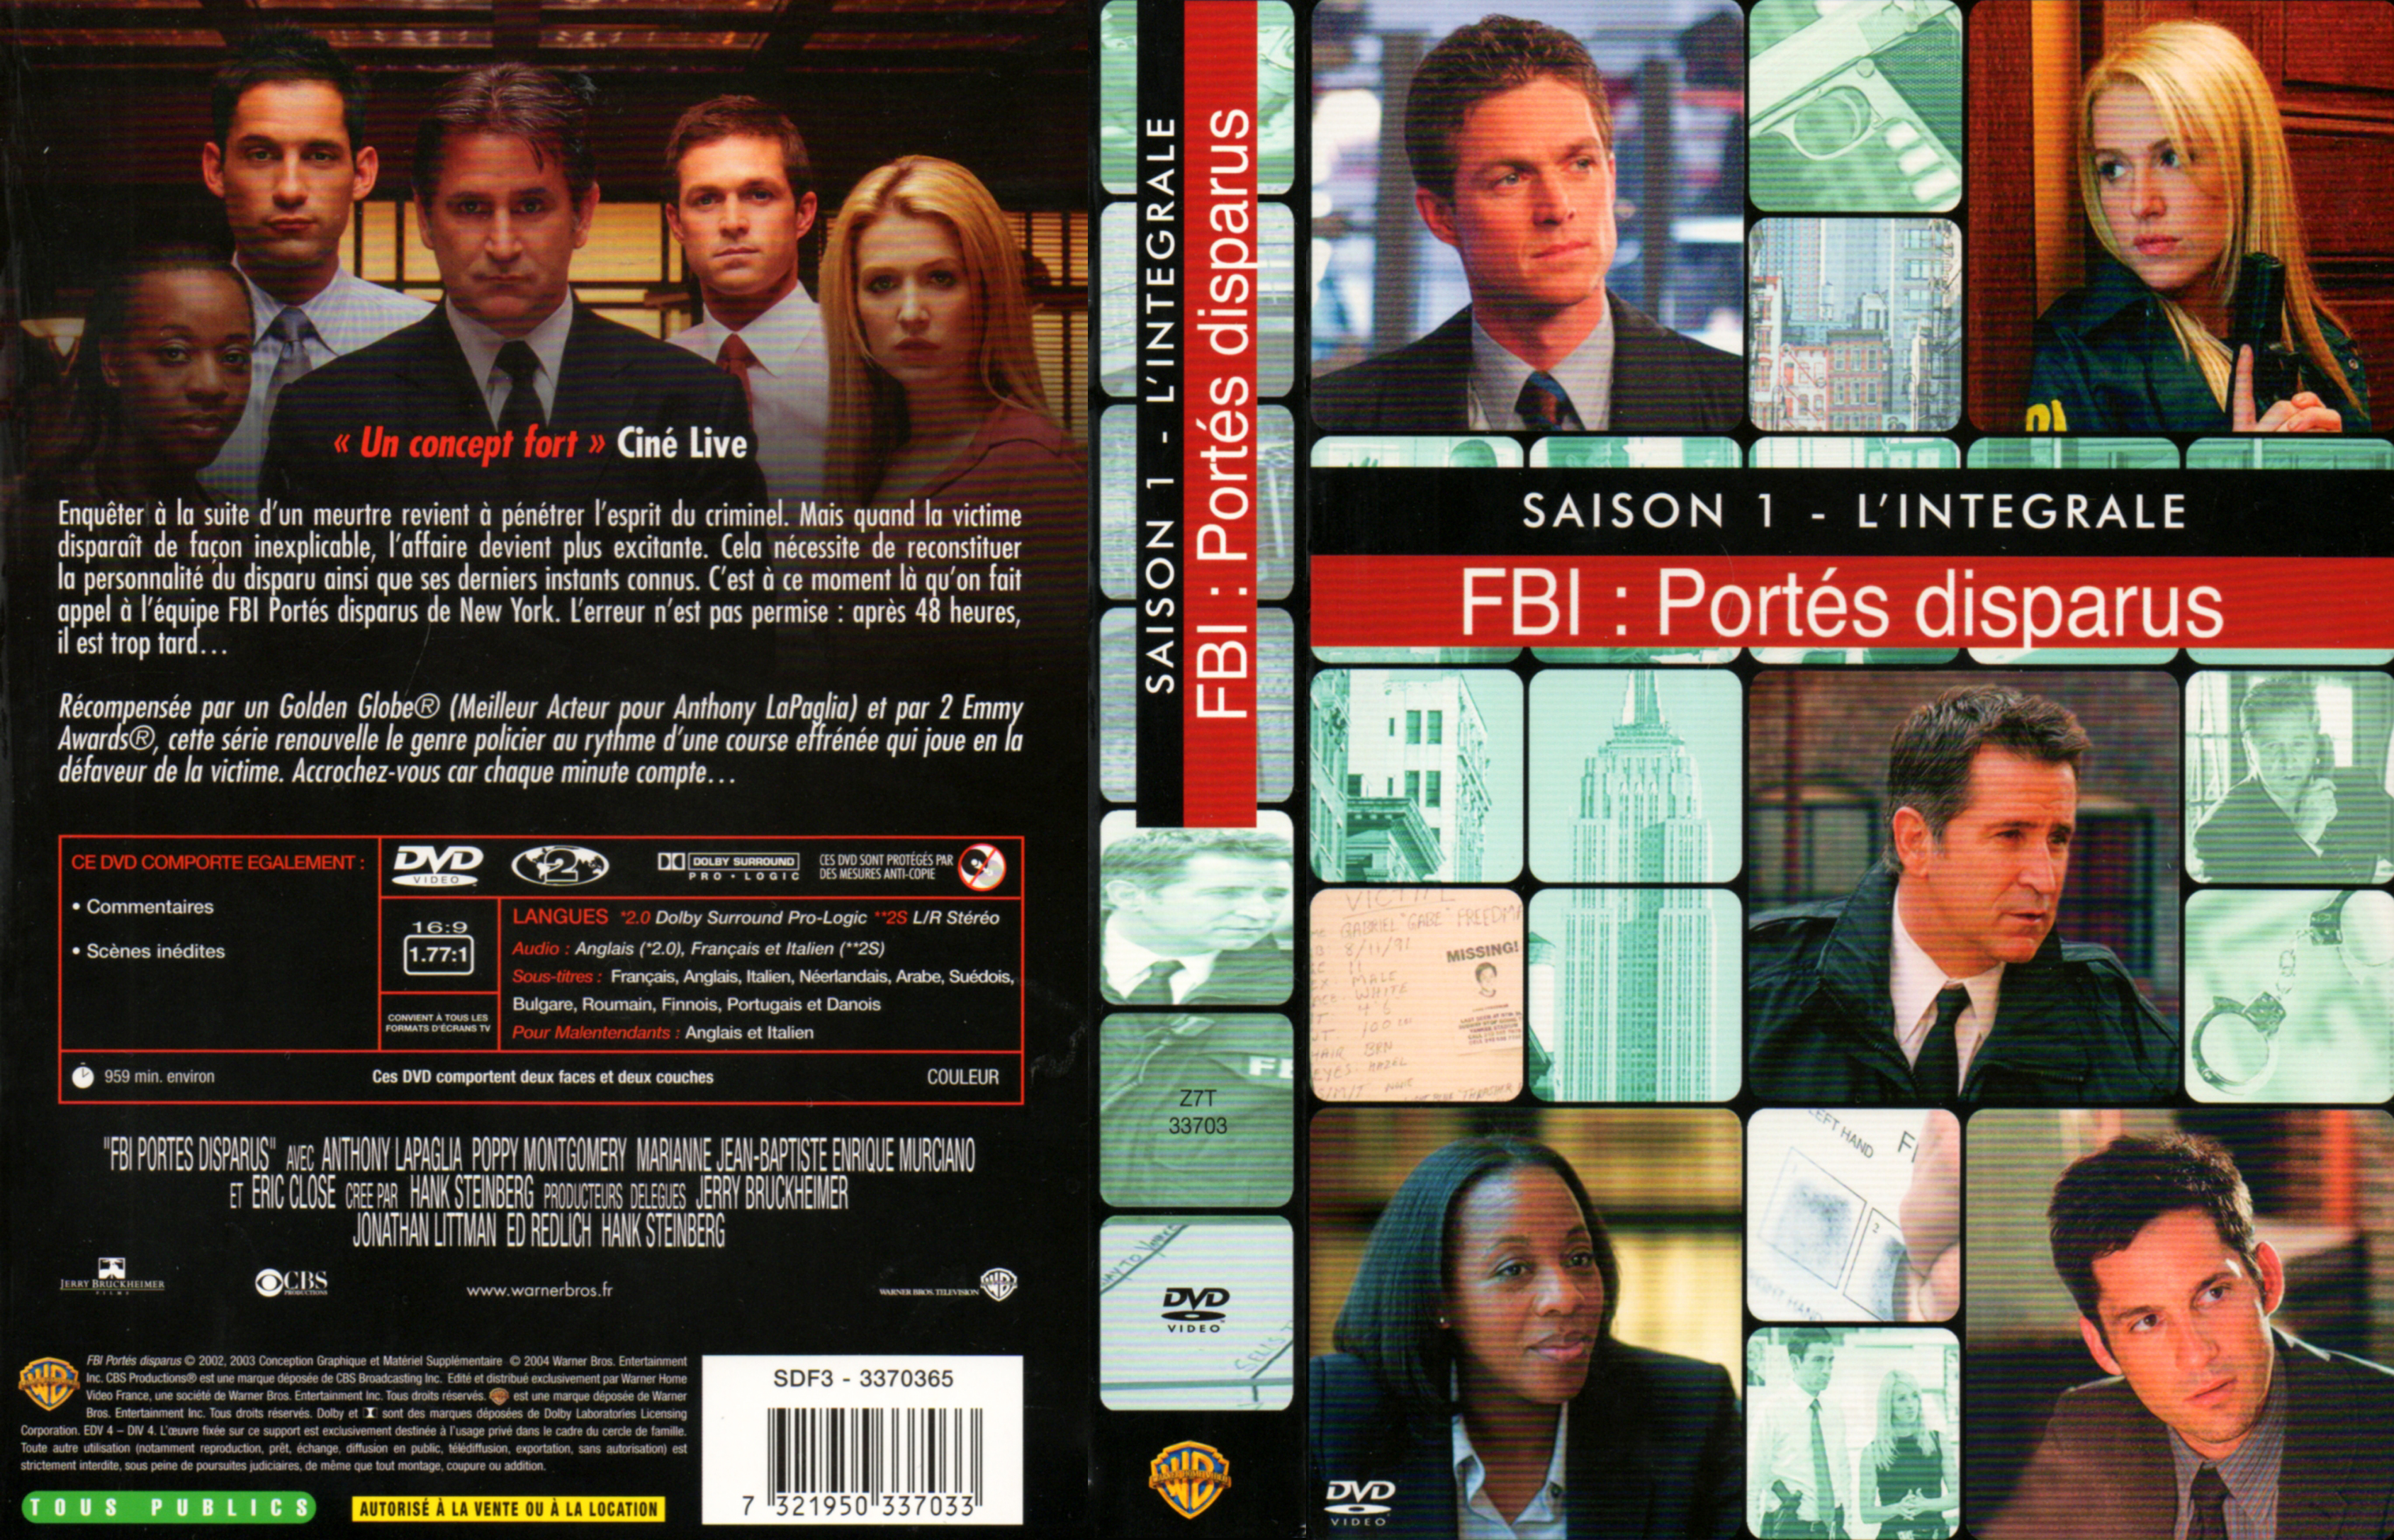 Jaquette DVD FBI portes disparus Saison 1 COFFRET